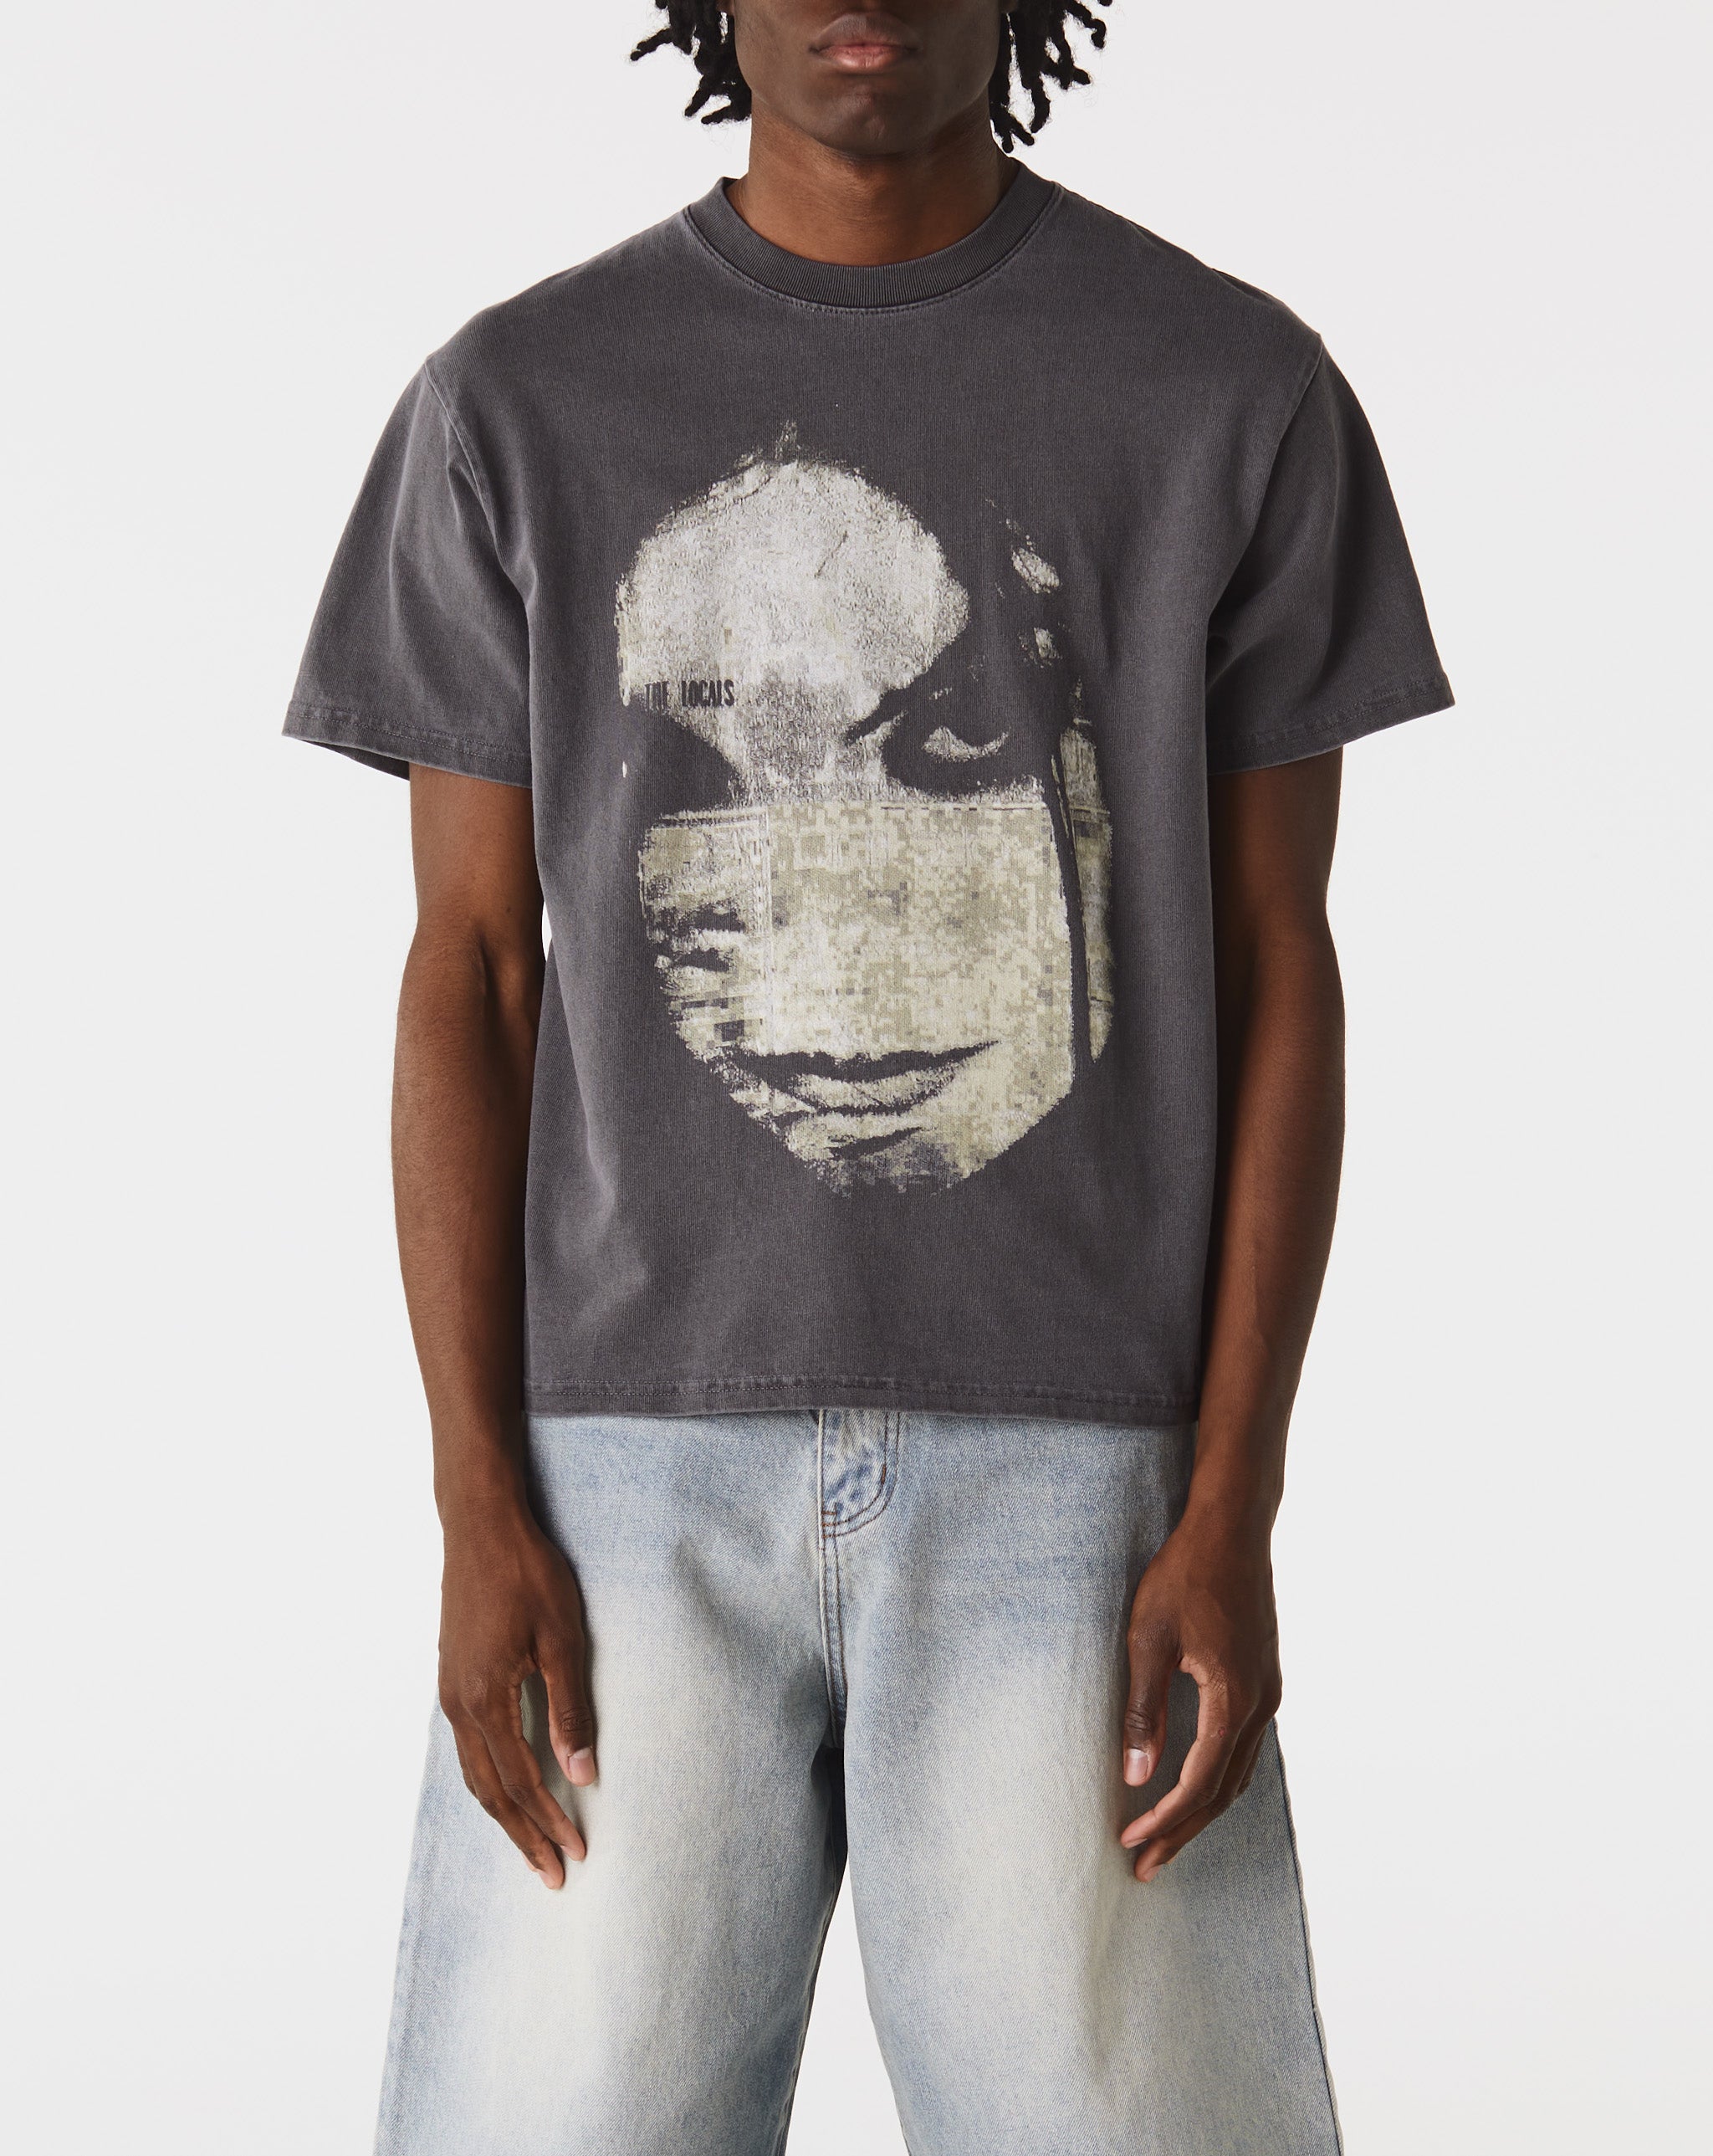 Basketcase Gallery Evanescence T-Shirt  - Cheap Urlfreeze Jordan outlet